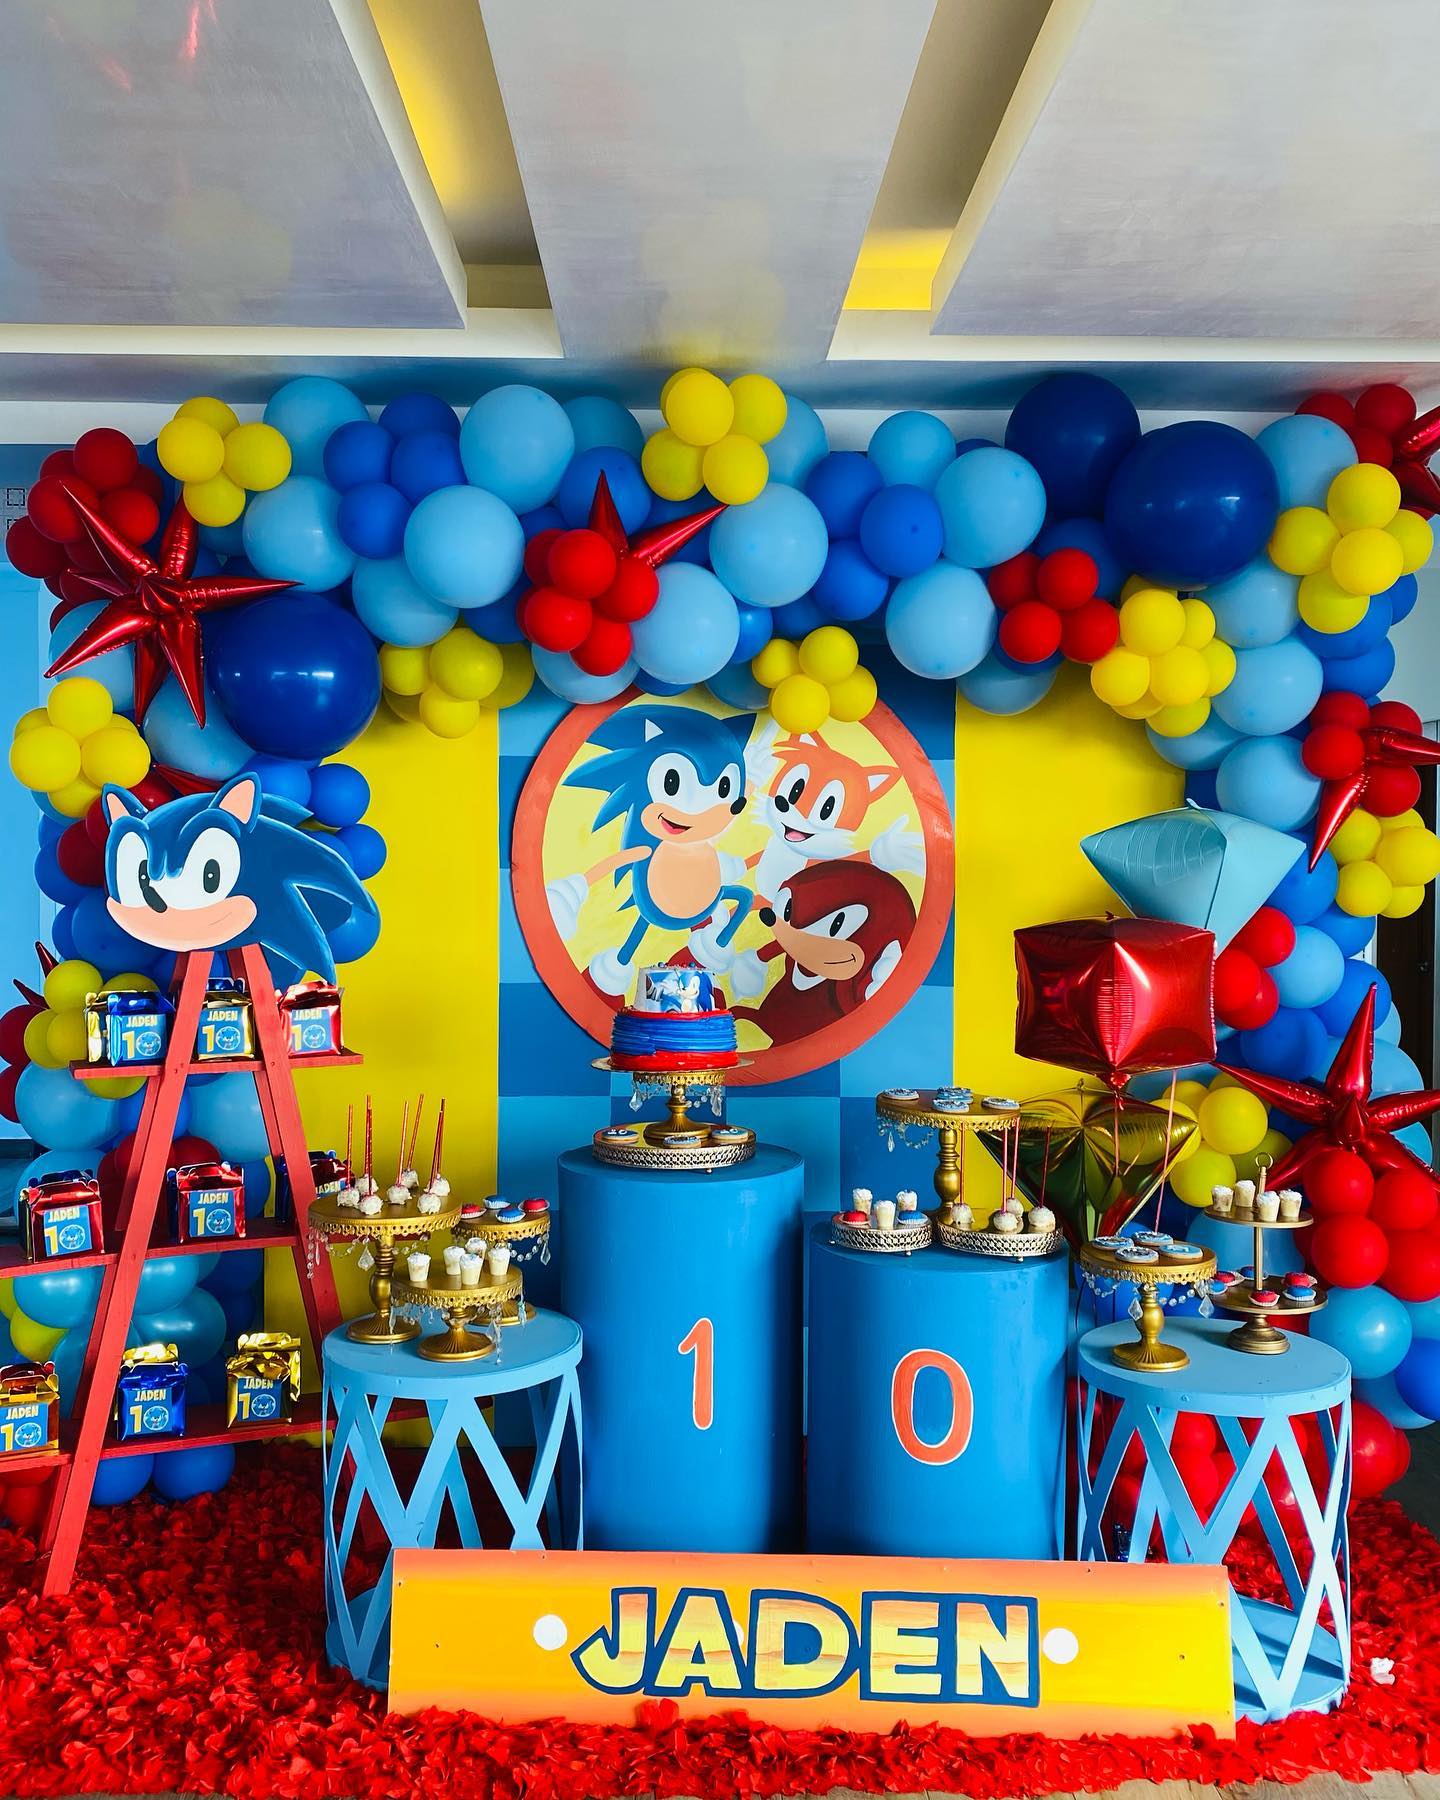 Fiesta de Sonic: Decoraciones, fondos, dulceros, pasteles y mucho más